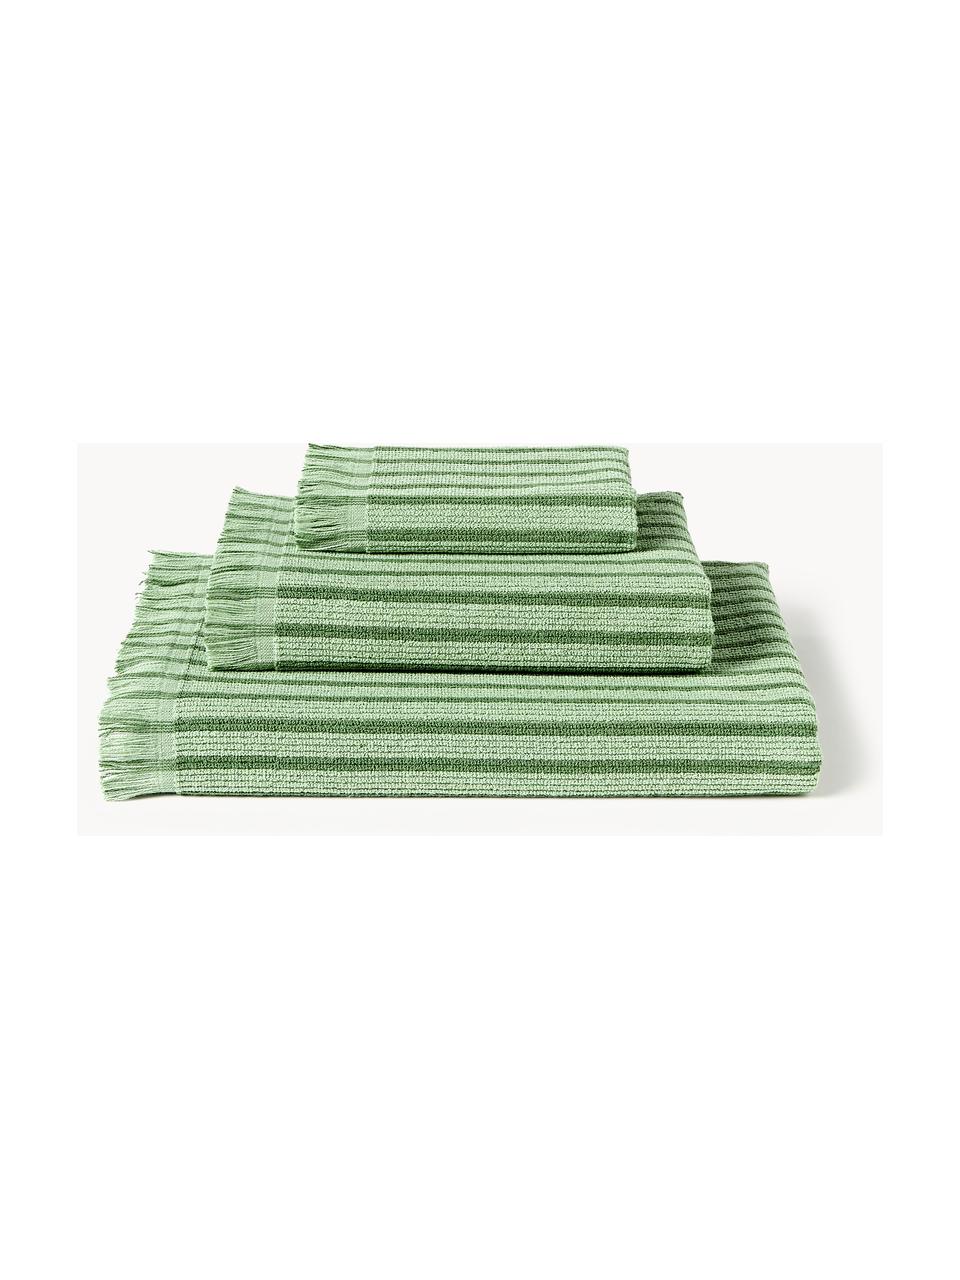 Handtuch-Set Irma, verschiedene Setgrössen, Grün, 4er-Set (Handtuch & Duschtuch)